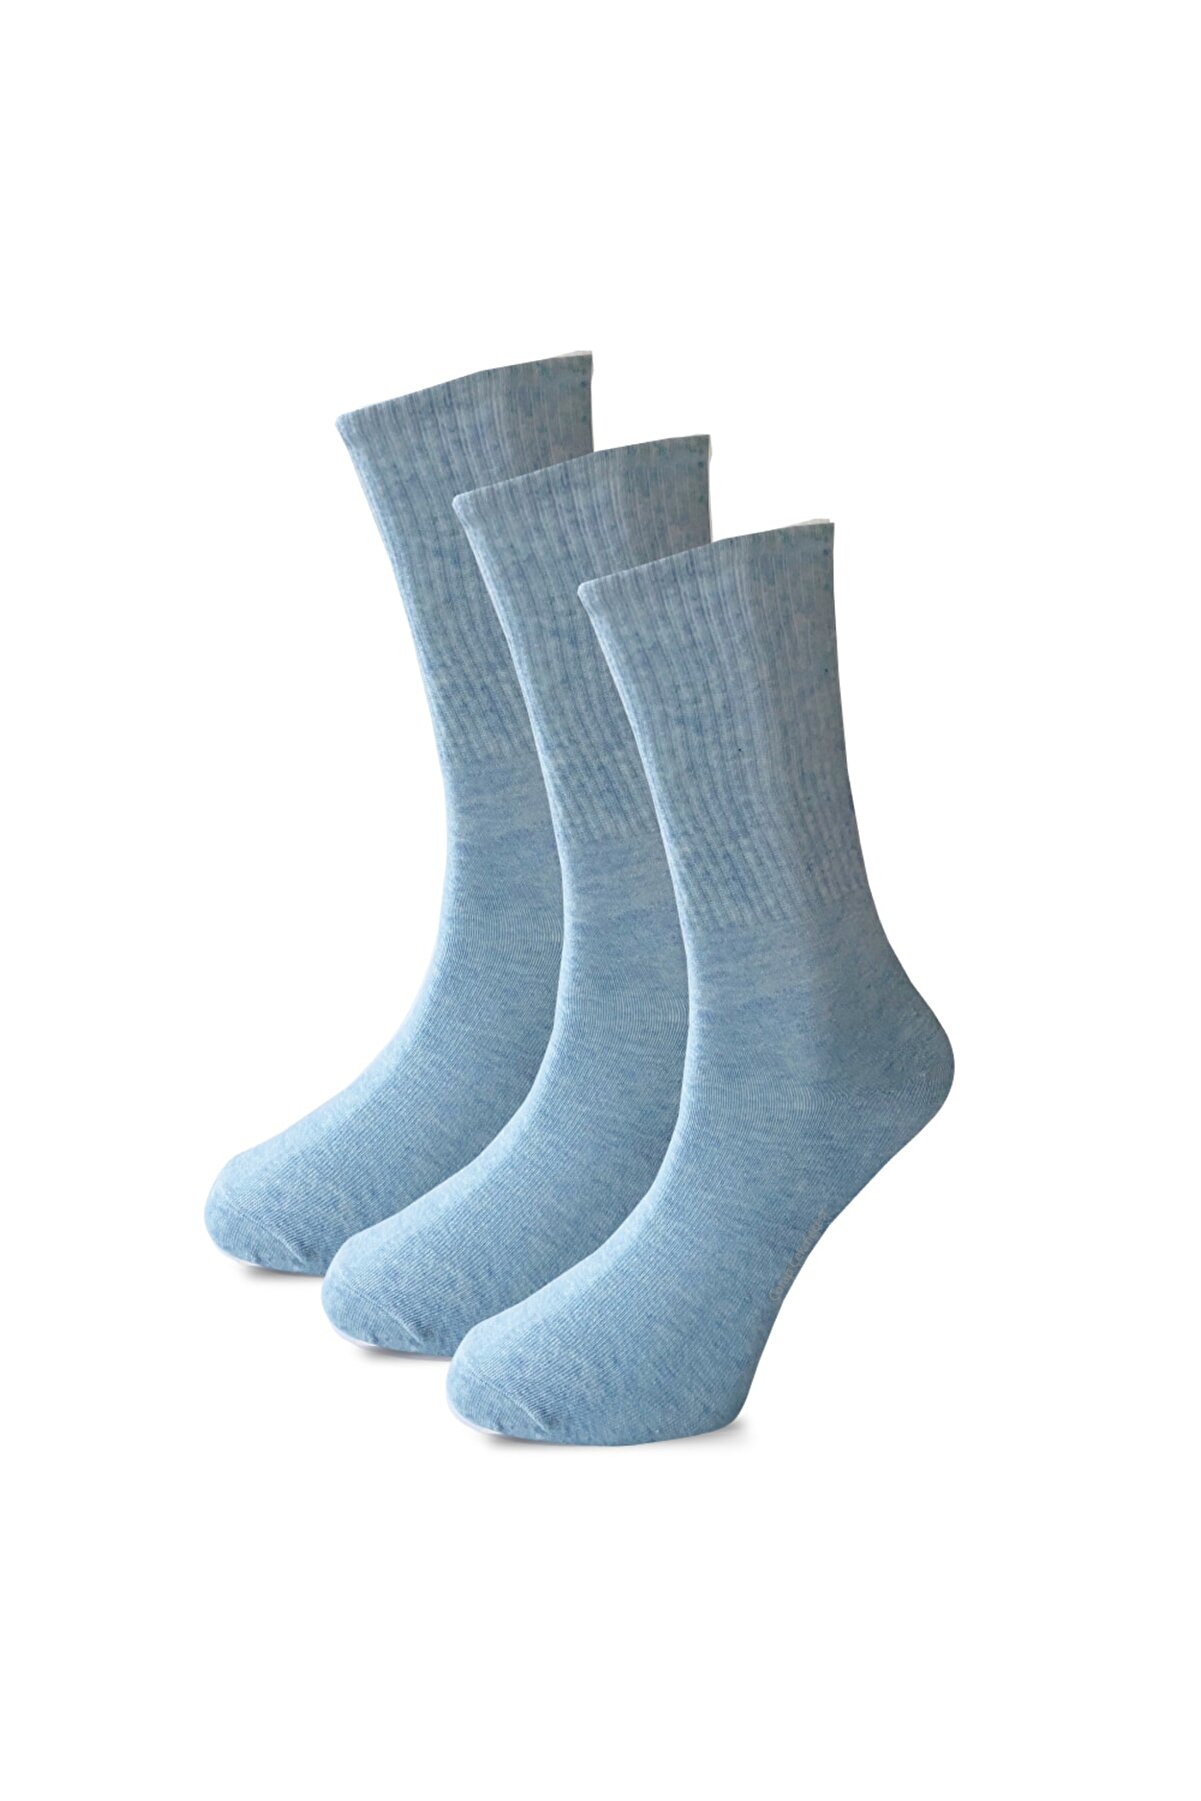 Çorap Çekmecesi Pamuklu Düz Mavi Tenis Çorap 3'lü